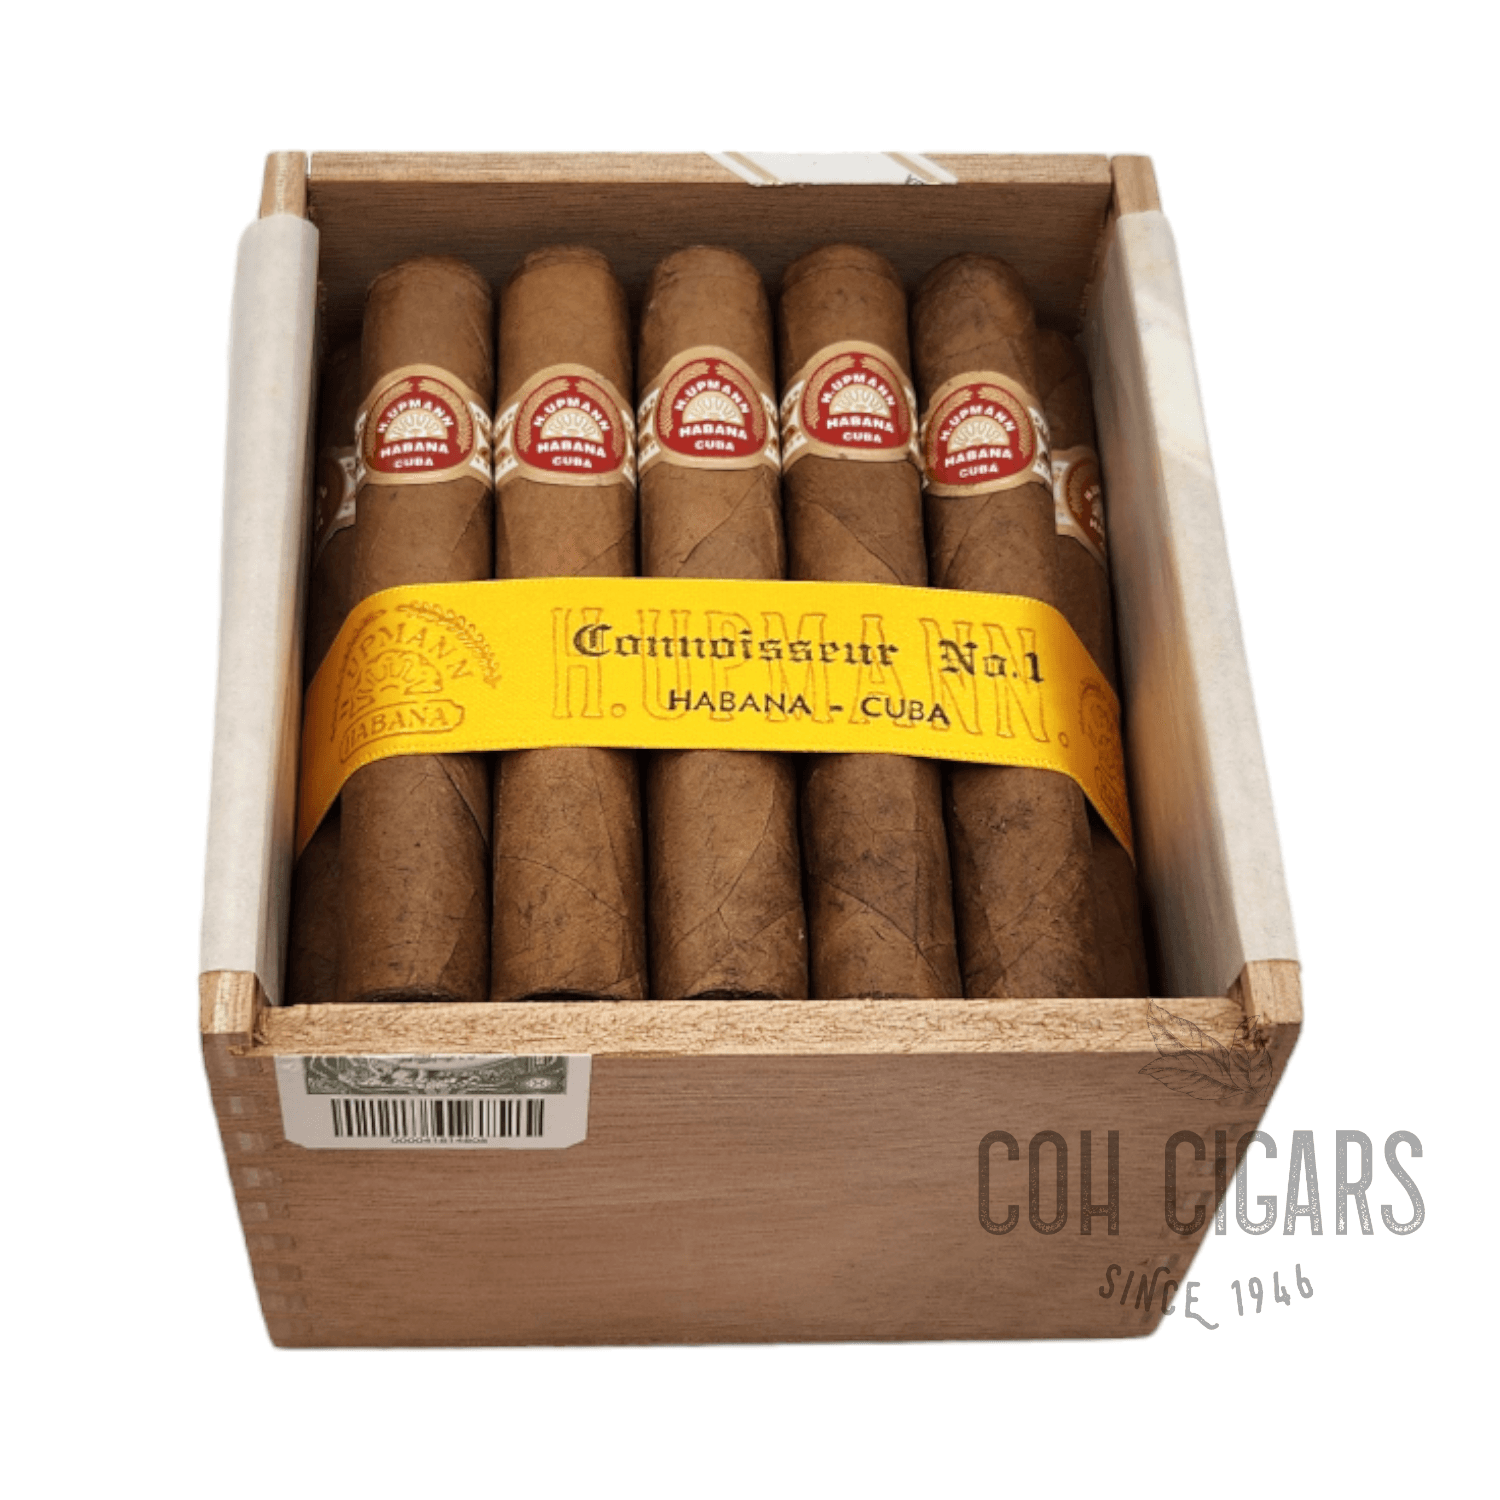 H.Upmann Cigar | Connoisseur No.1 | Box 25 - hk.cohcigars